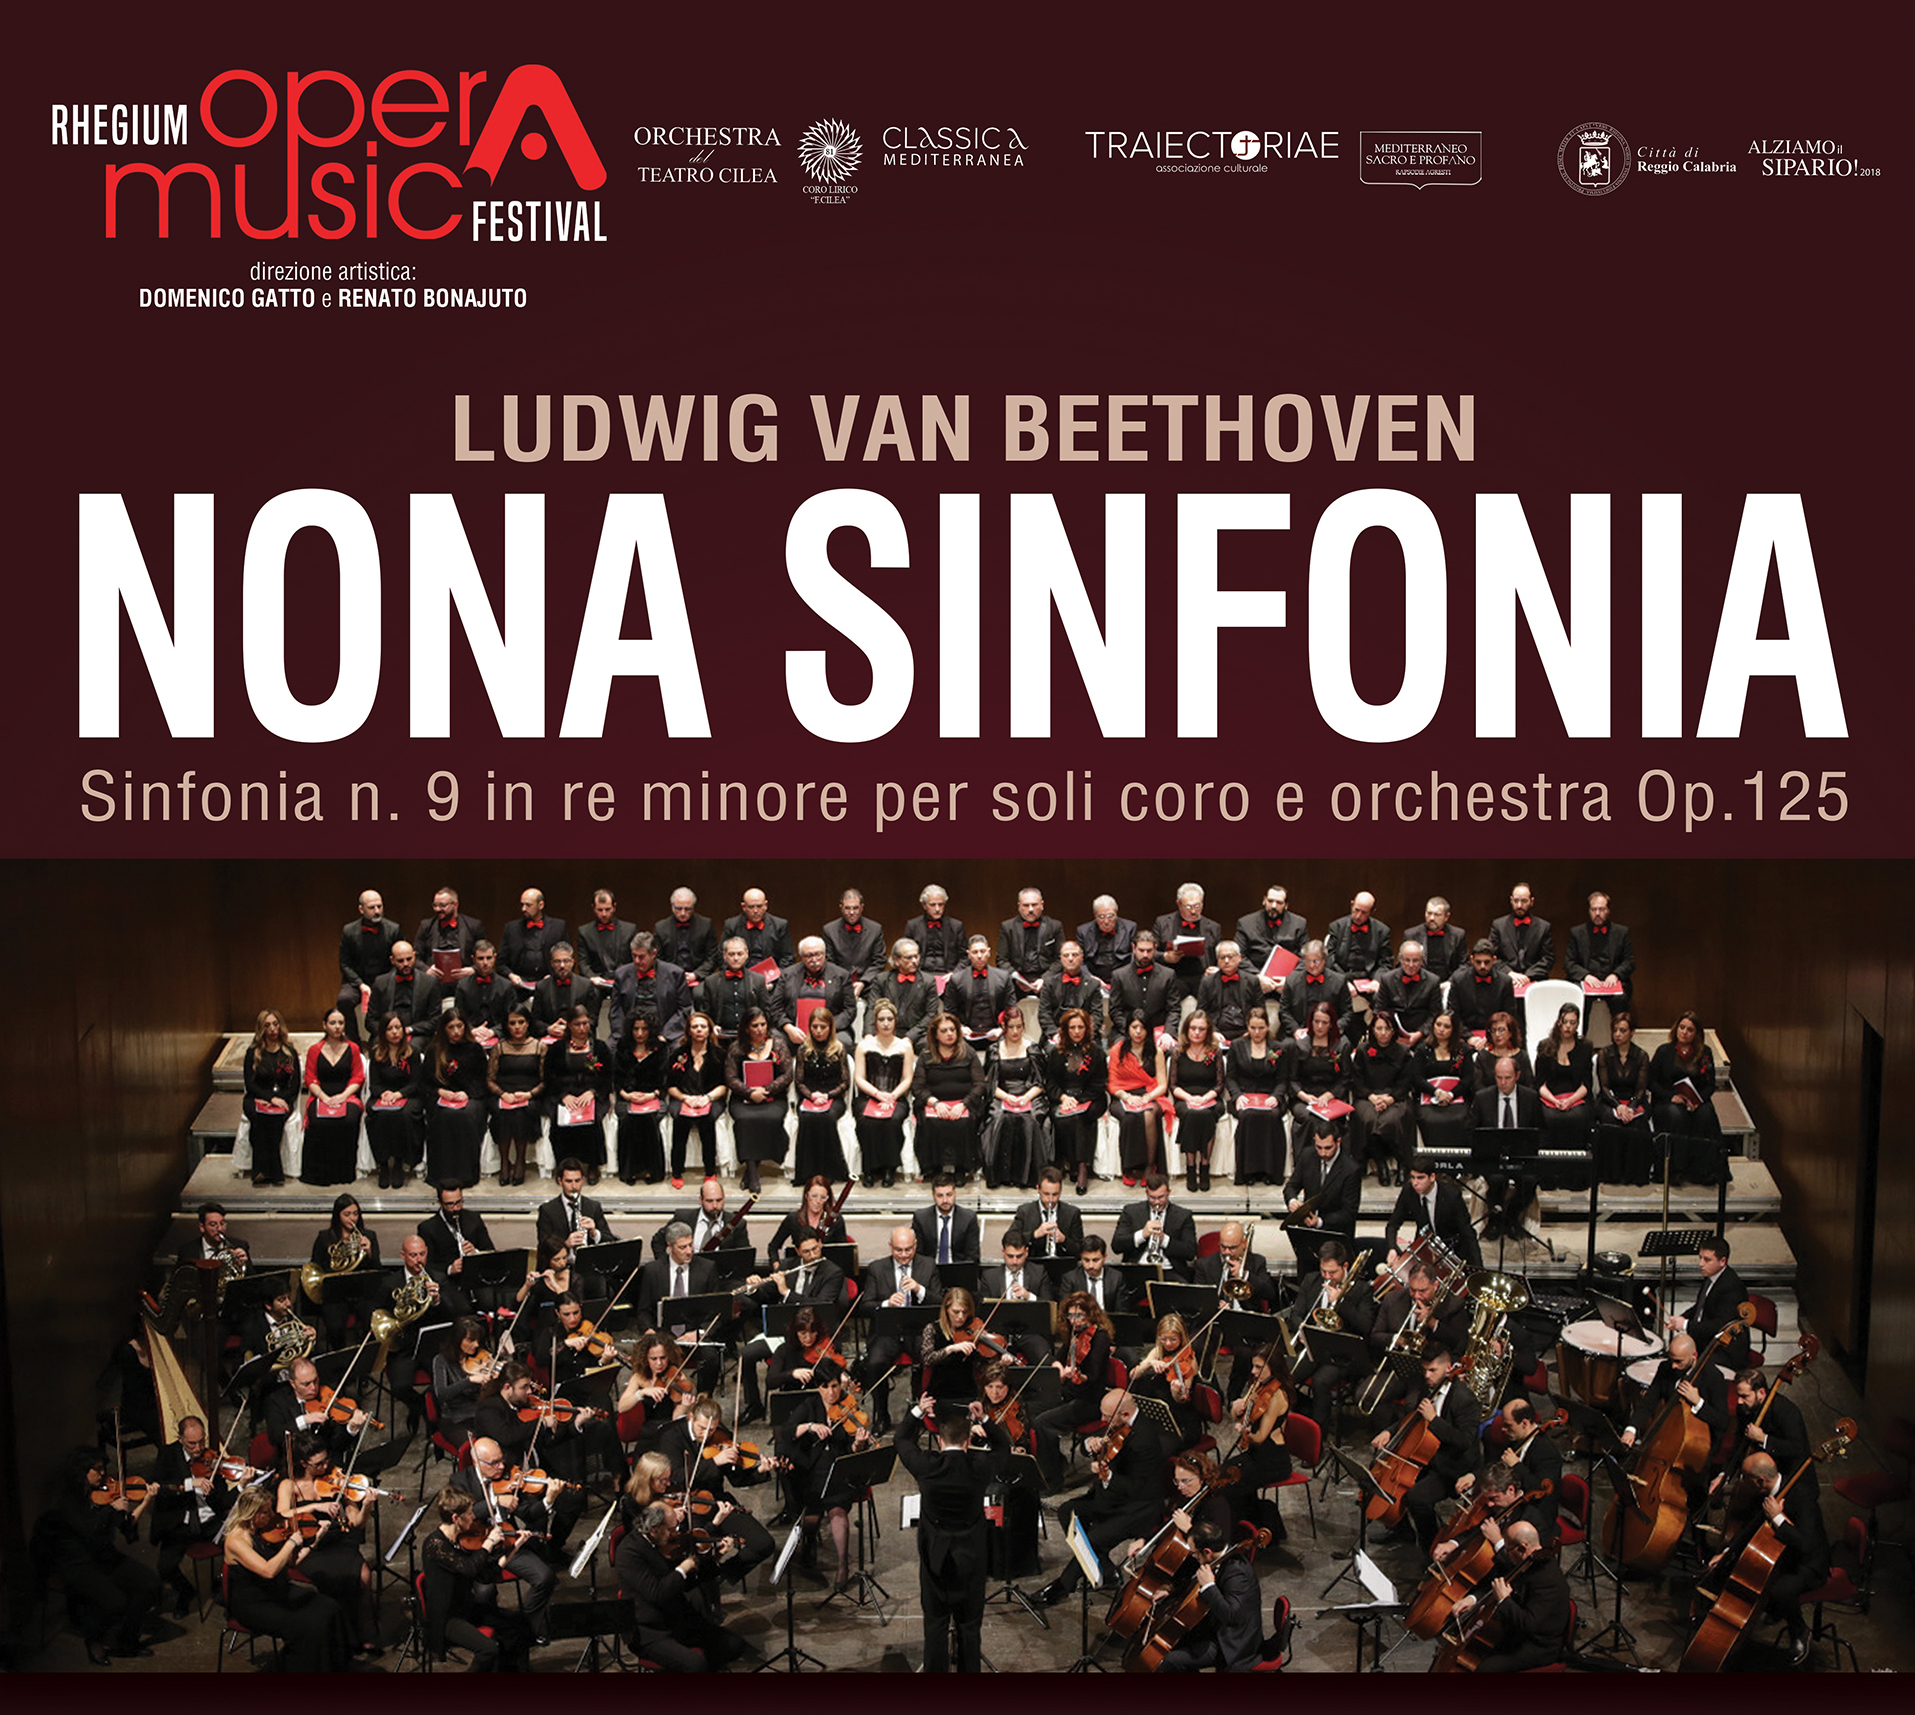 La Nona Sinfonia di Beethoven al Cilea di Reggio Calabria venerdì 1 febbraio